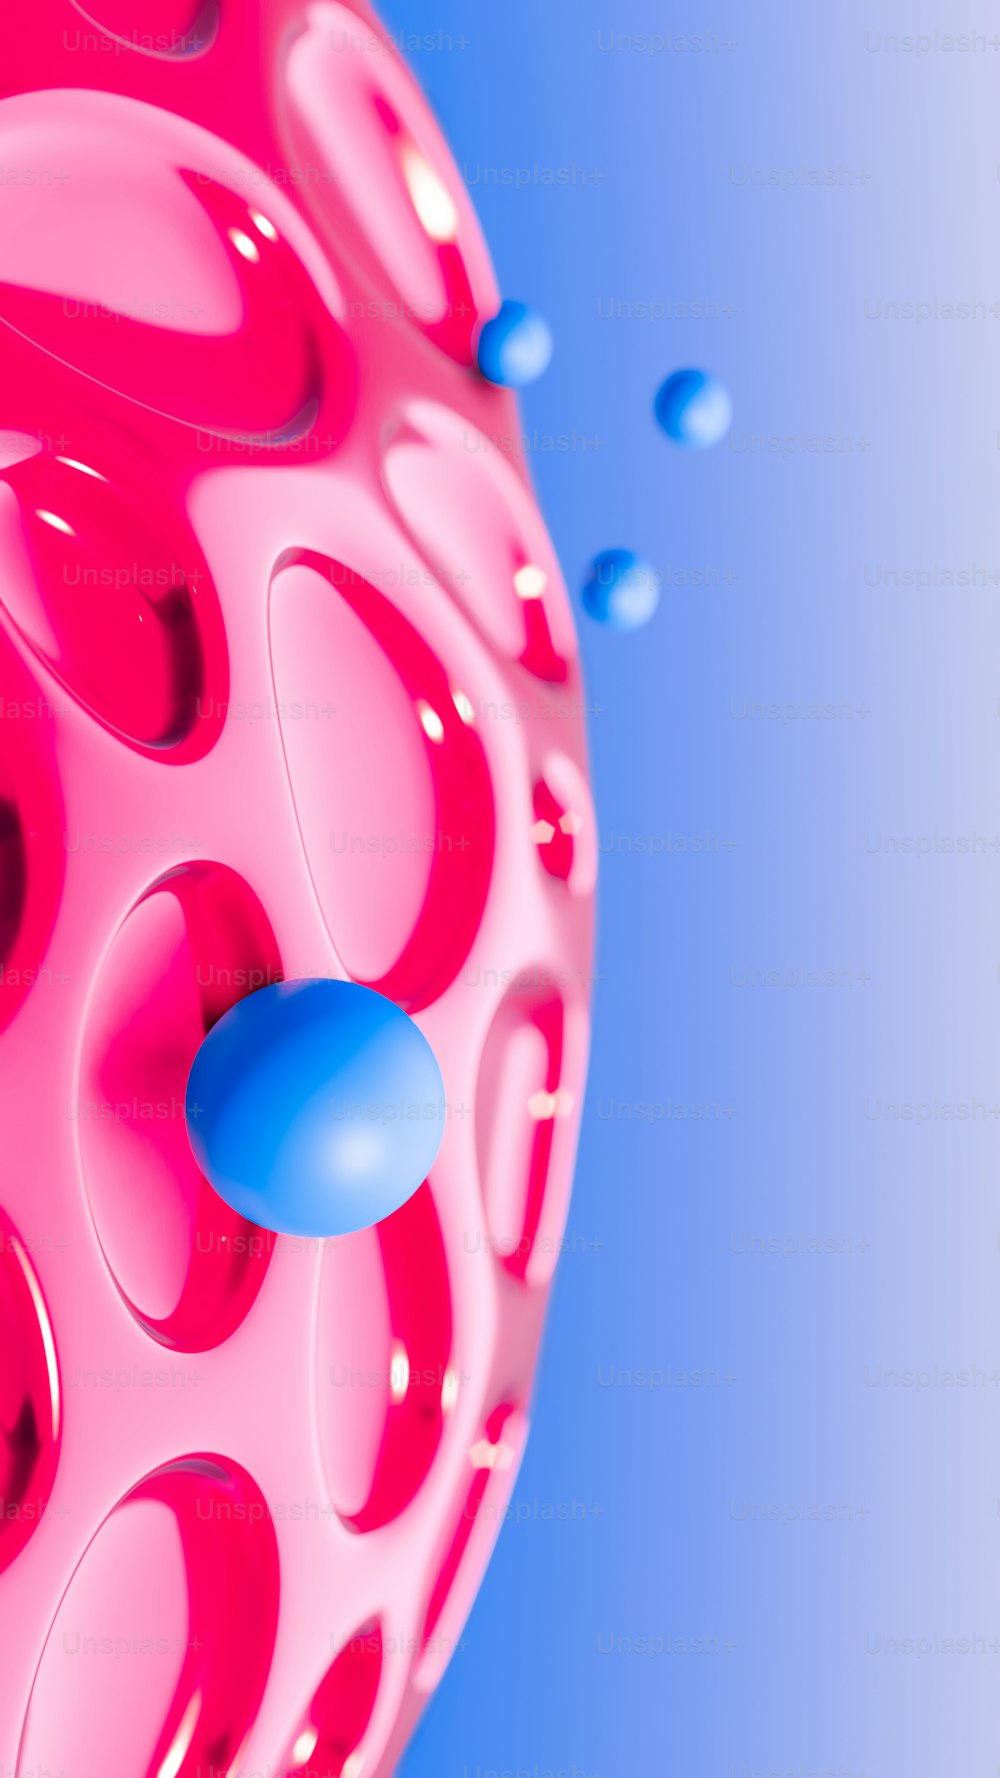 Un objeto rosa y azul con fondo azul